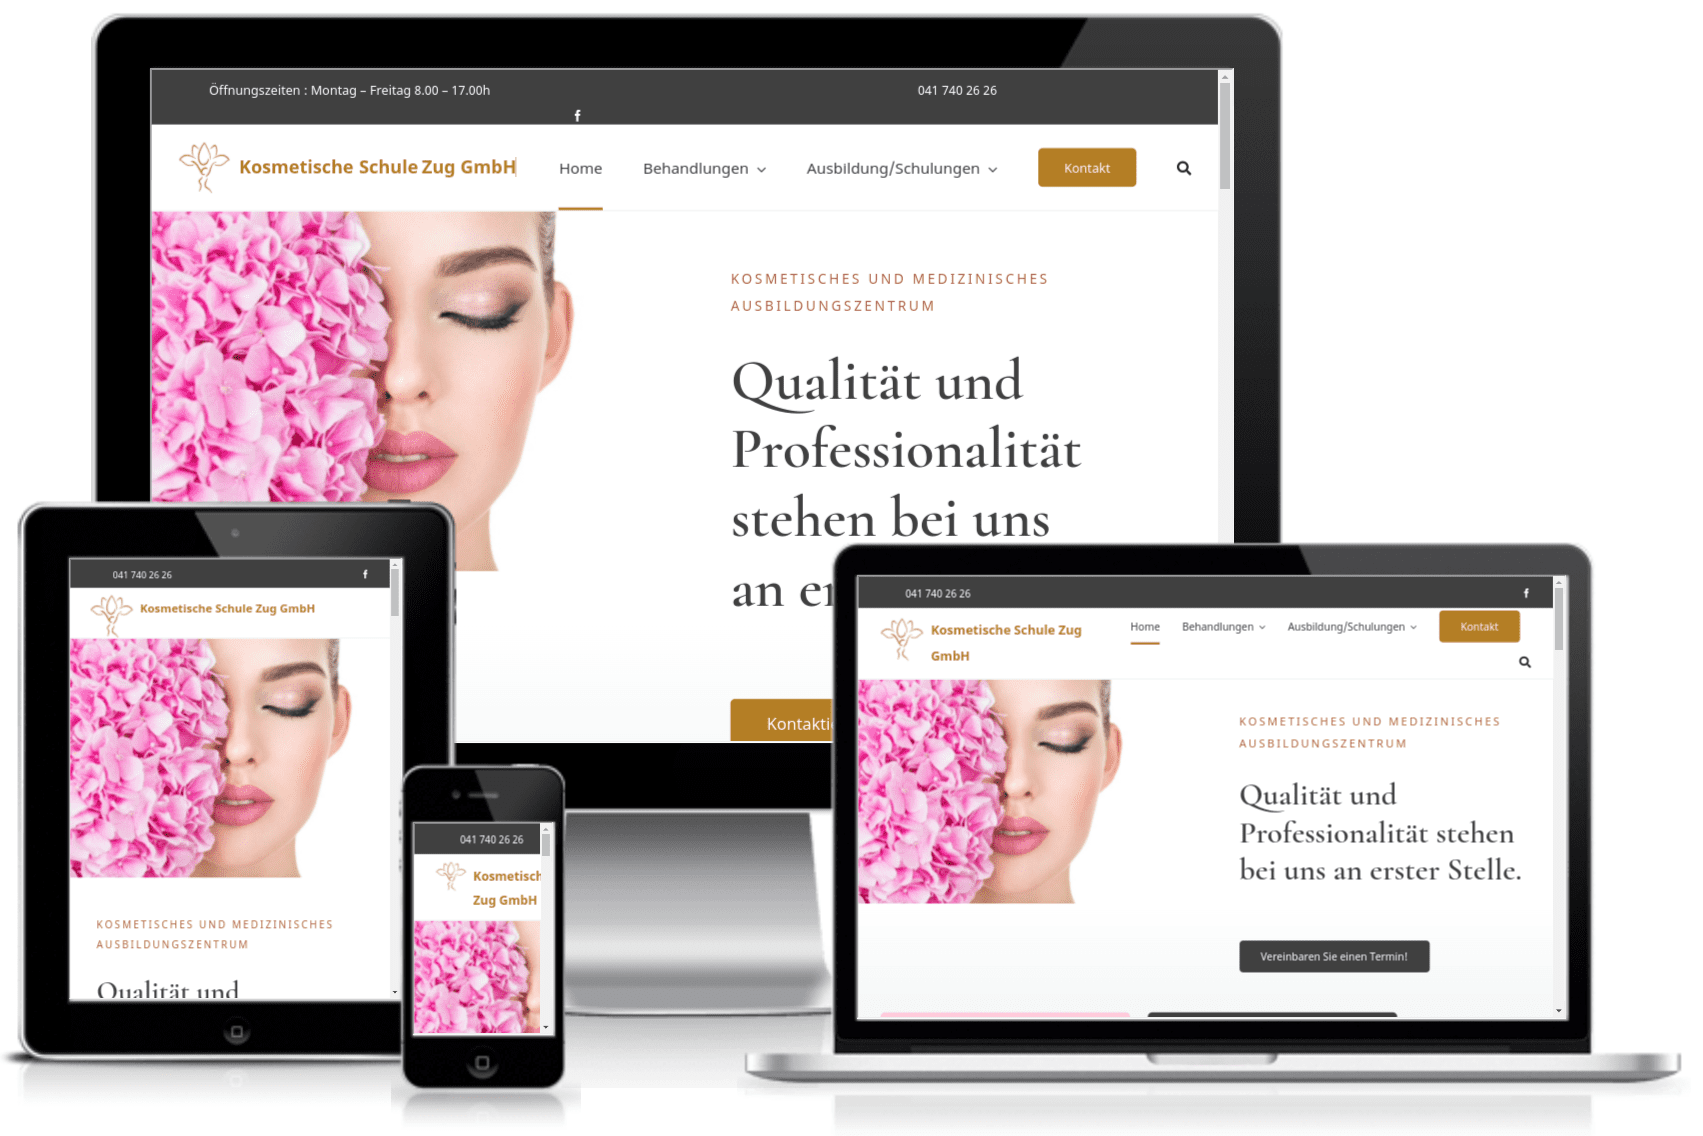 Erstellung der neuen Wordpress Website für die 'Kosmetische Schule Zug GmbH'